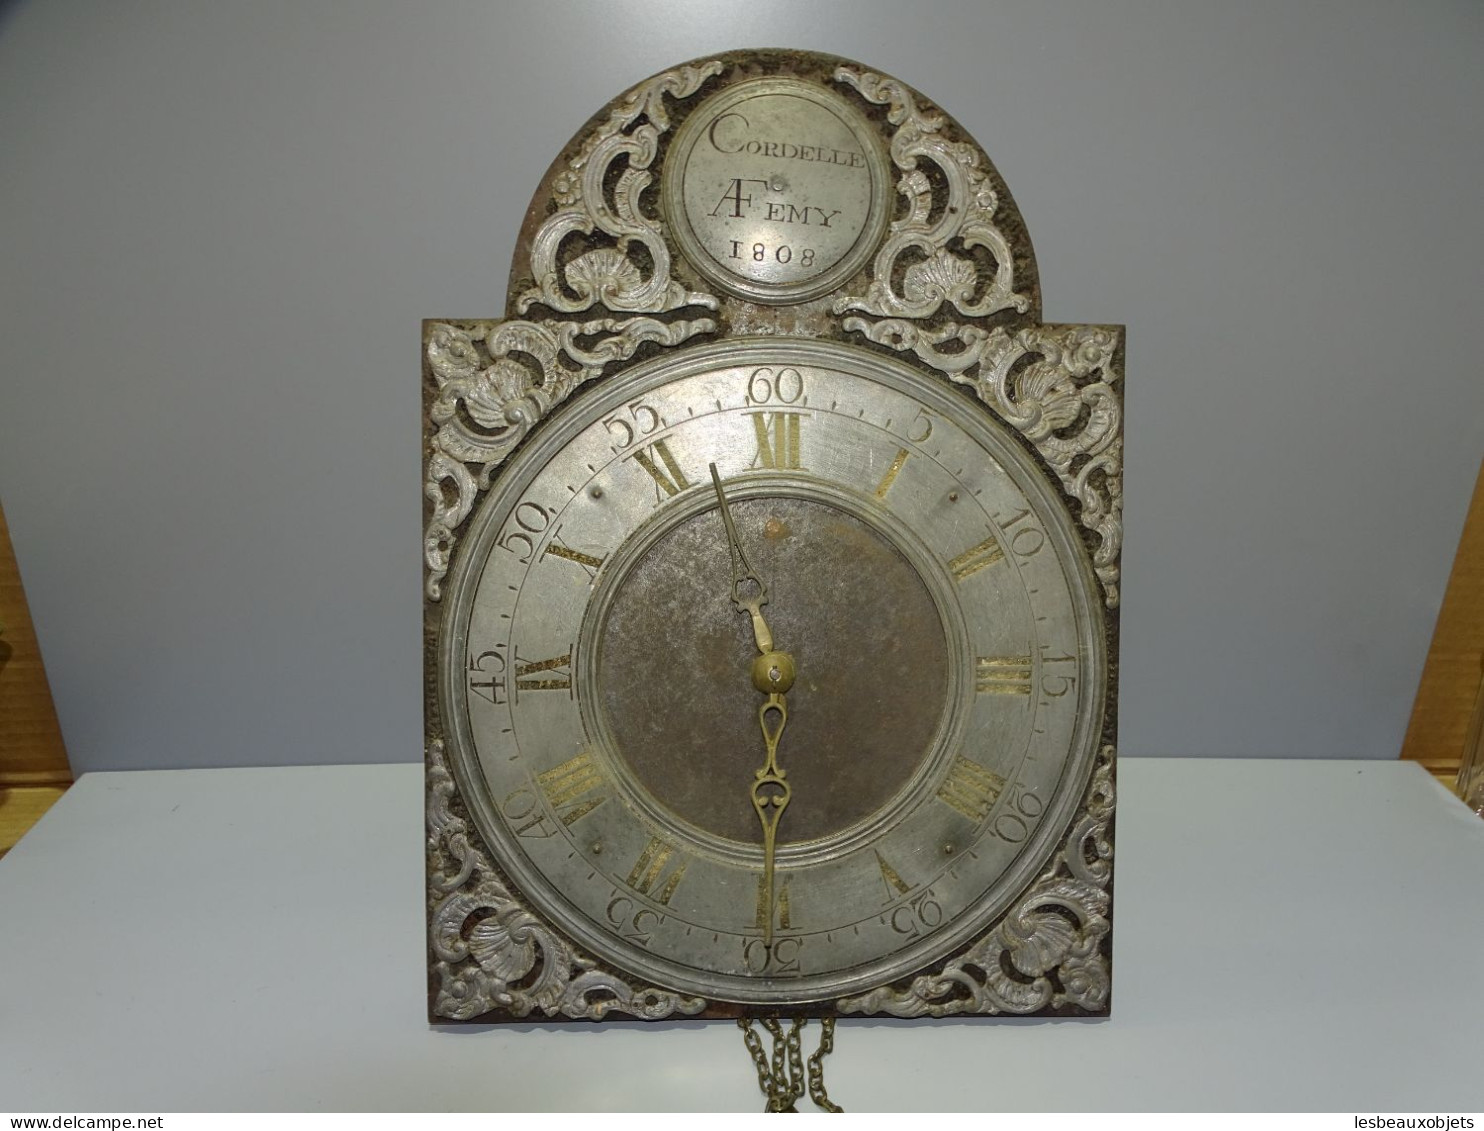 -ANCIEN MOUVEMENT HORLOGE COMTOISE LANTERNE DEBUT XIXe 1808 CORBELLE AFEMY E - Clocks